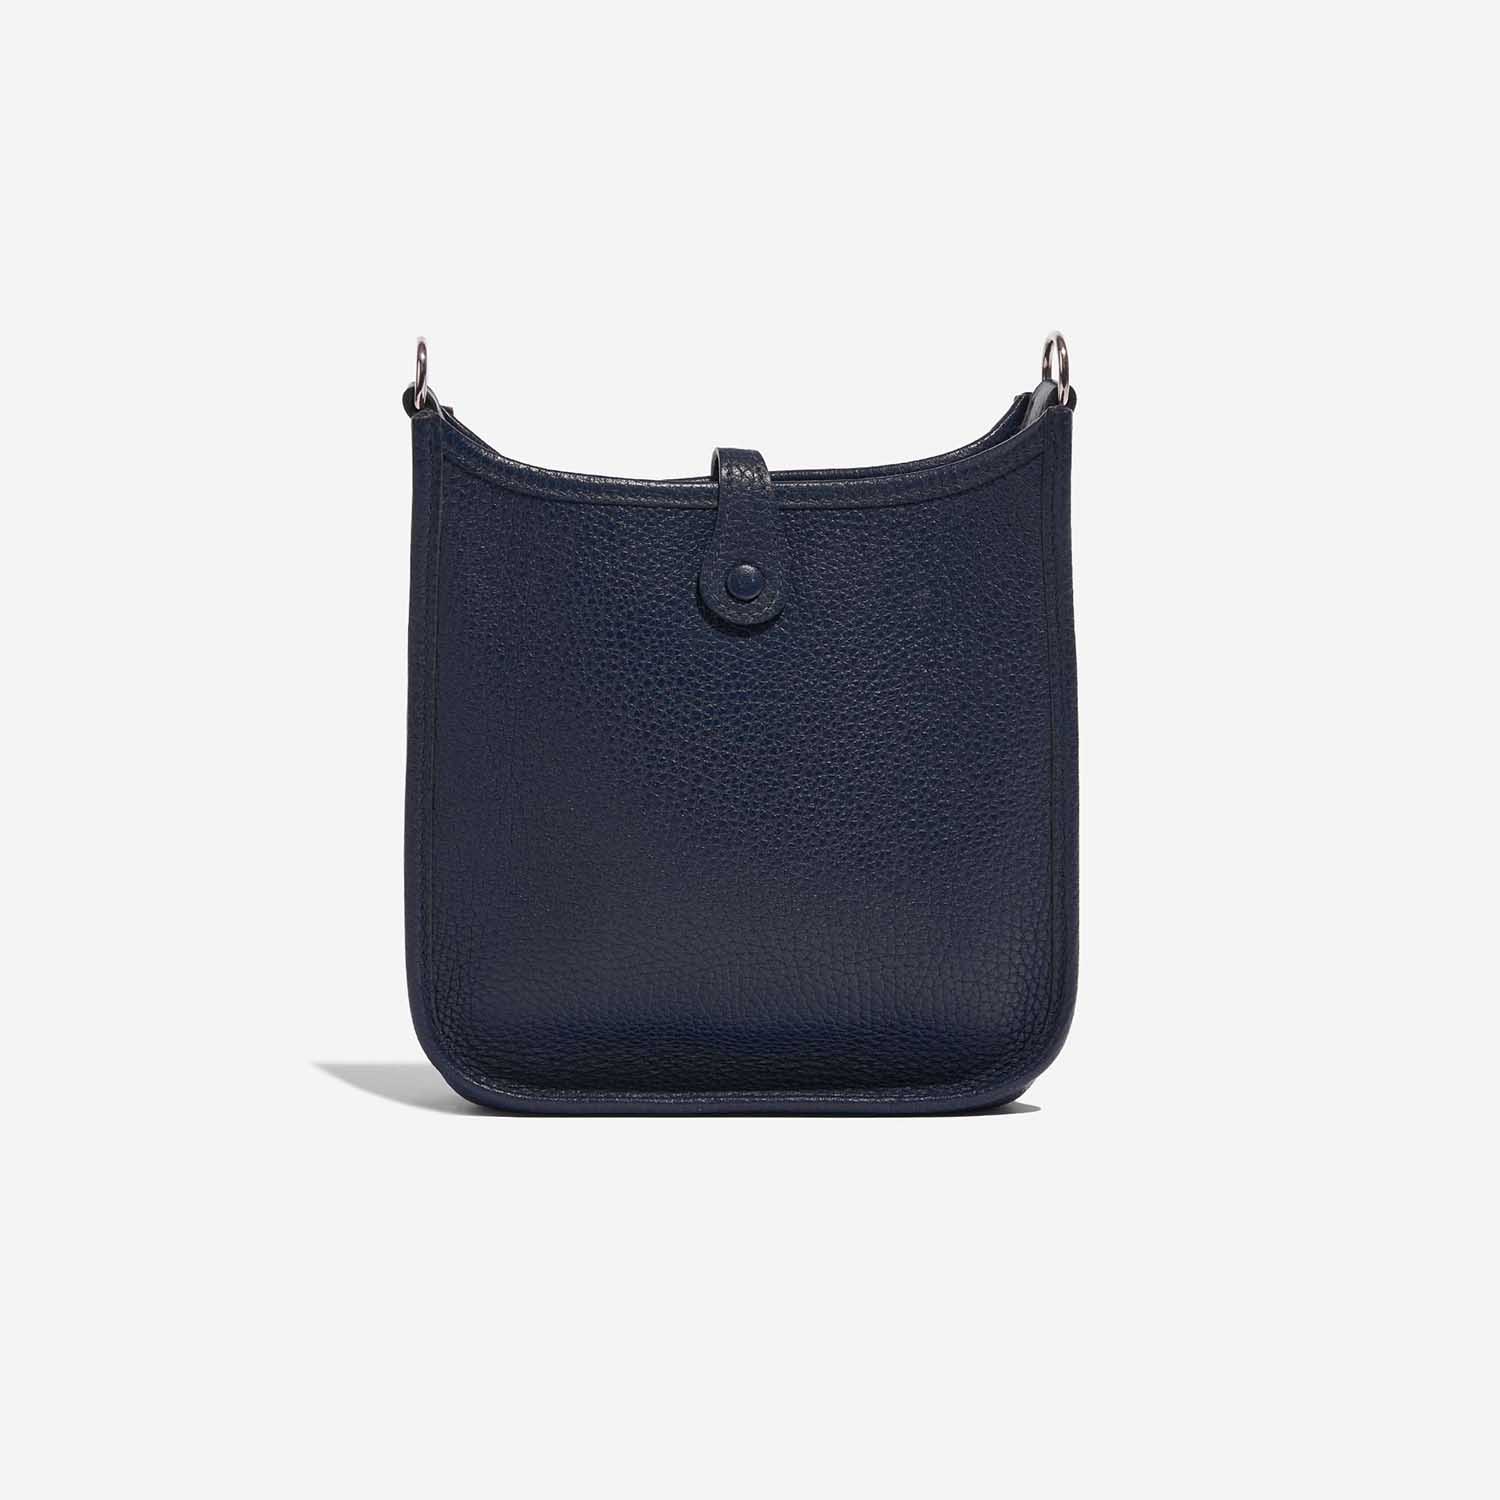 Pre-owned Hermès bag Evelyne 16 Taurillon Clemence Blue Nuit Blue Back | Sell your designer bag on Saclab.com